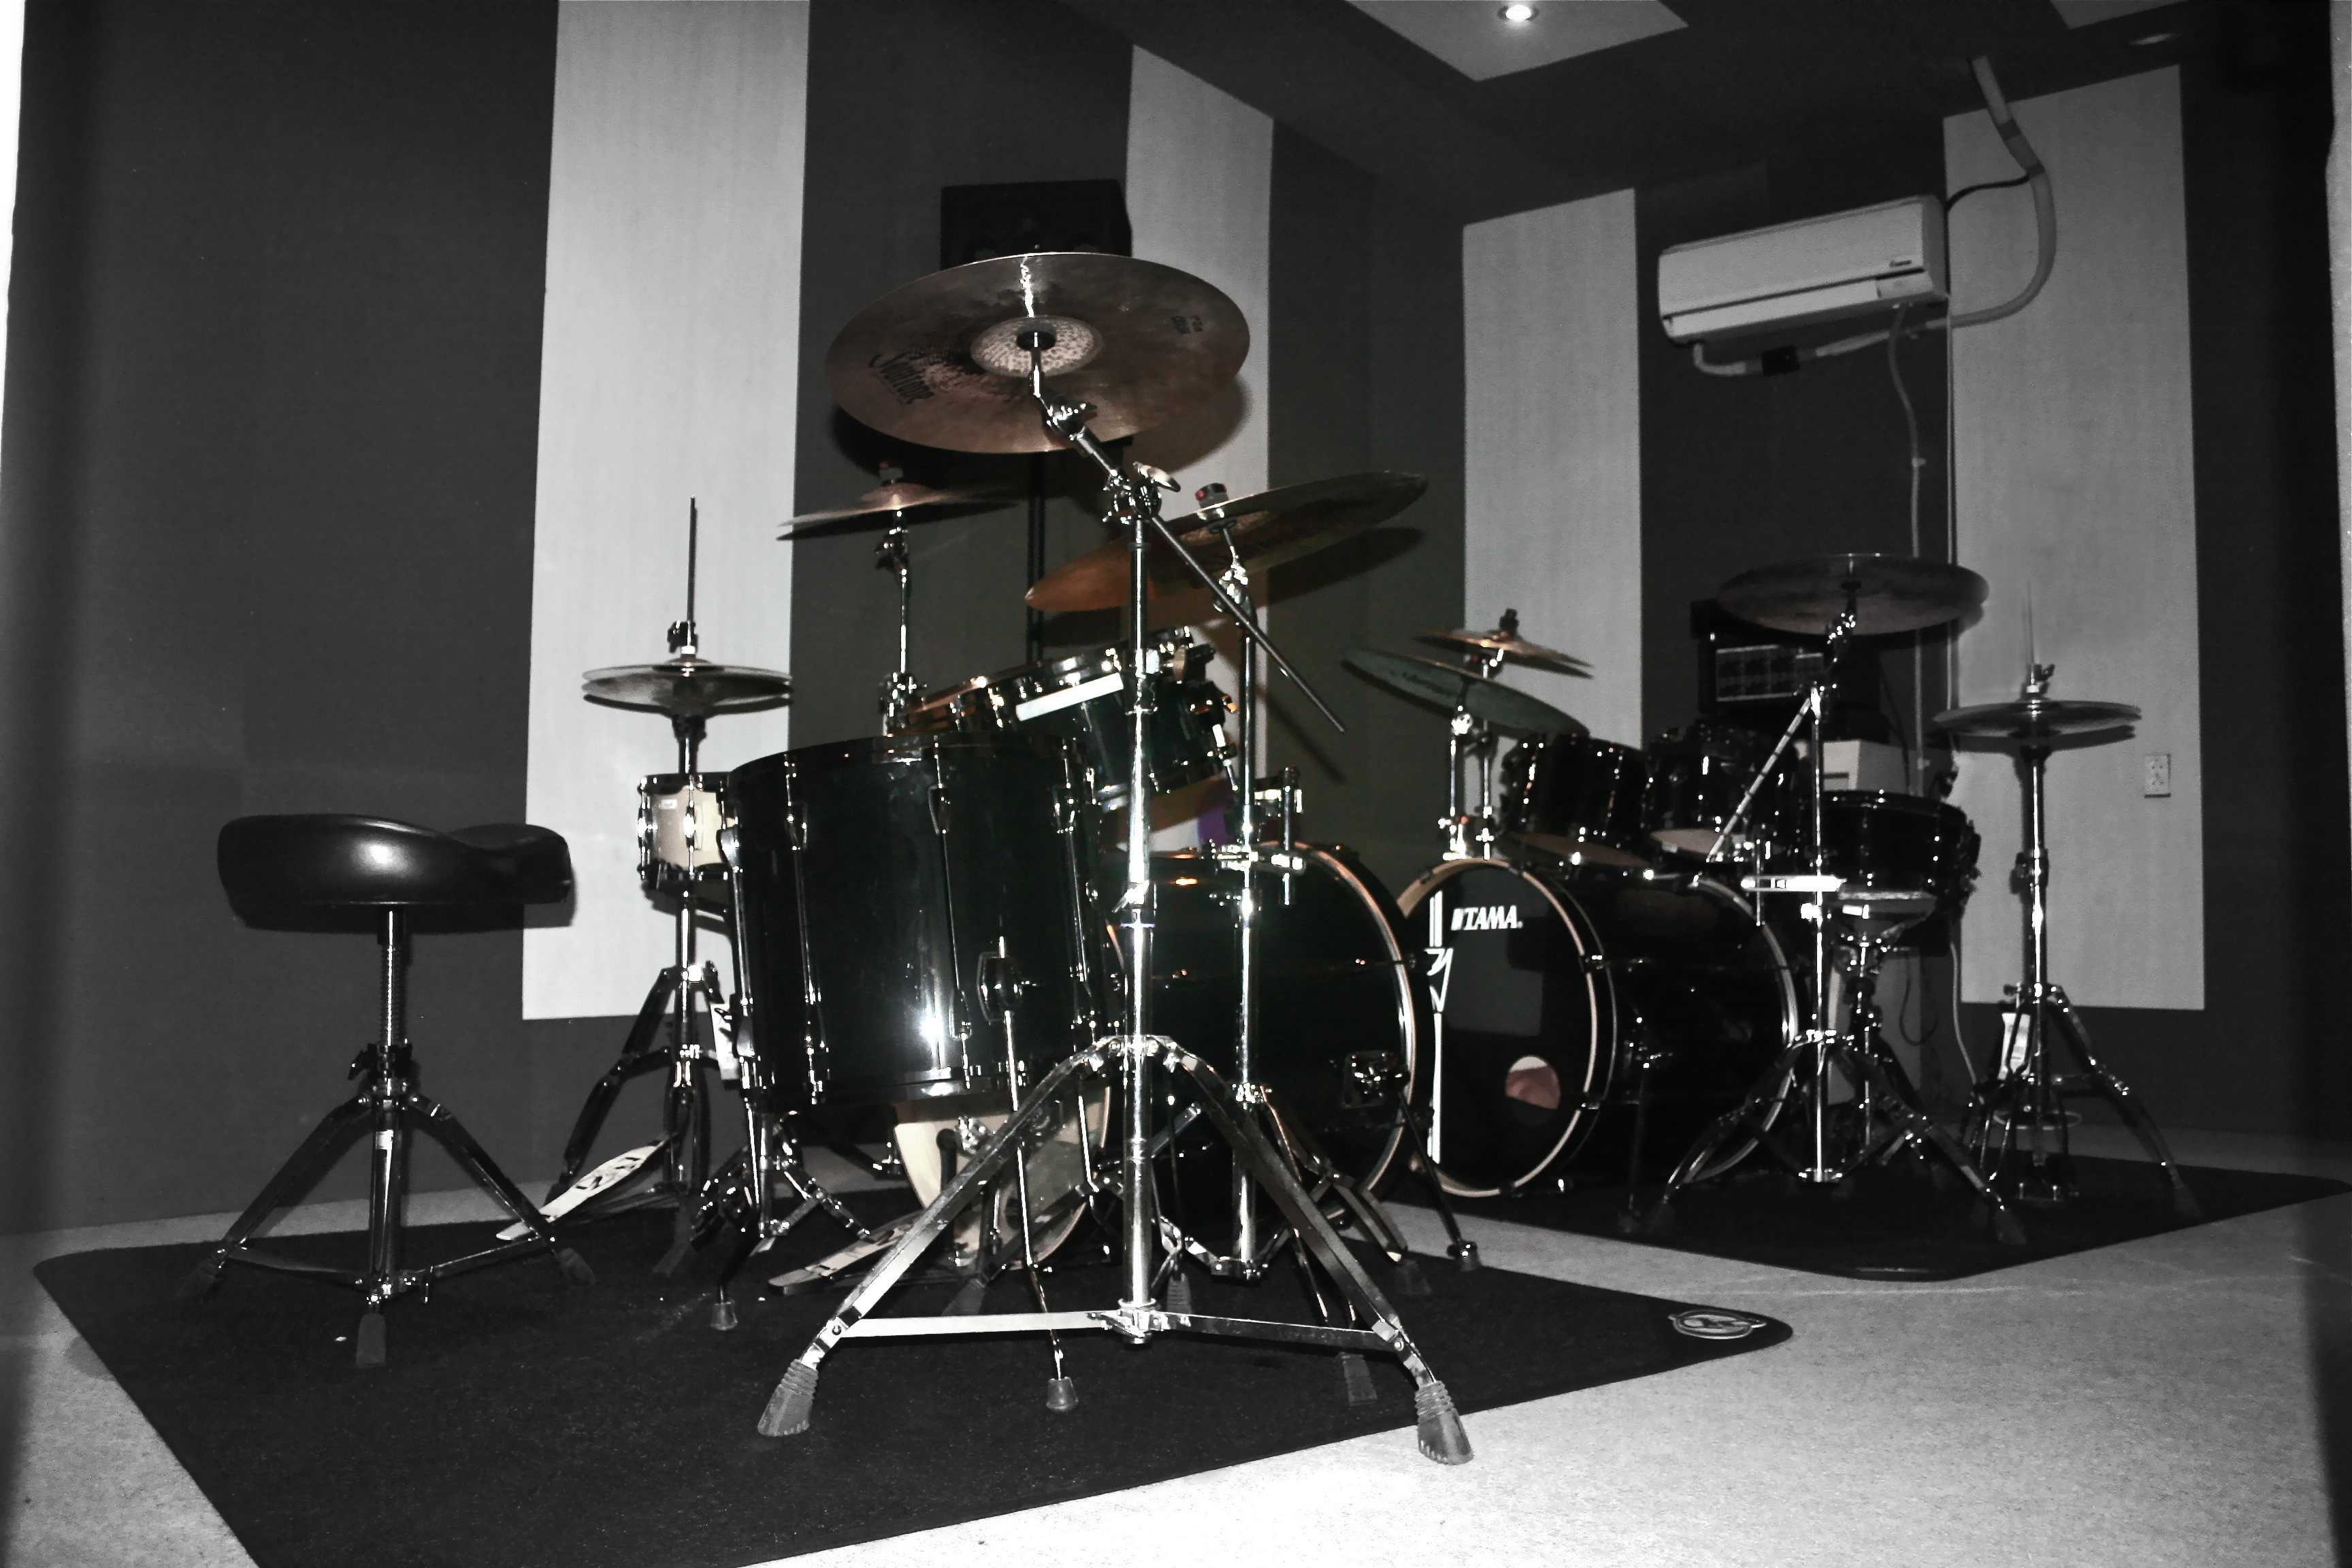 Drumschool Paul Castricum Heerhugowaard